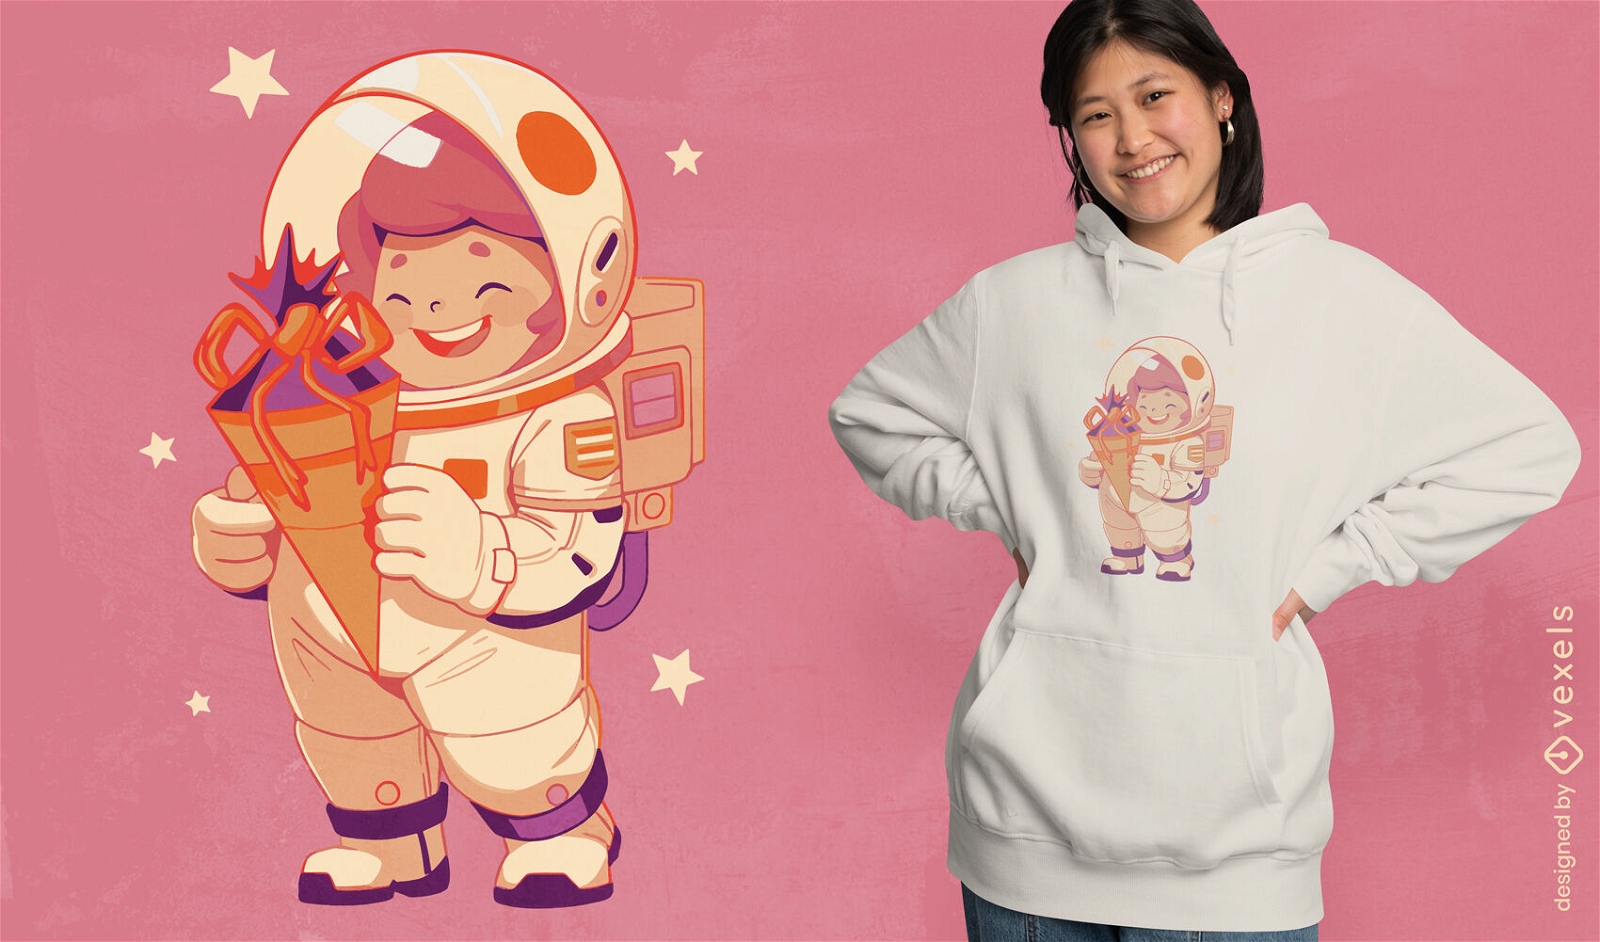 Astronaut woman t-shirt design